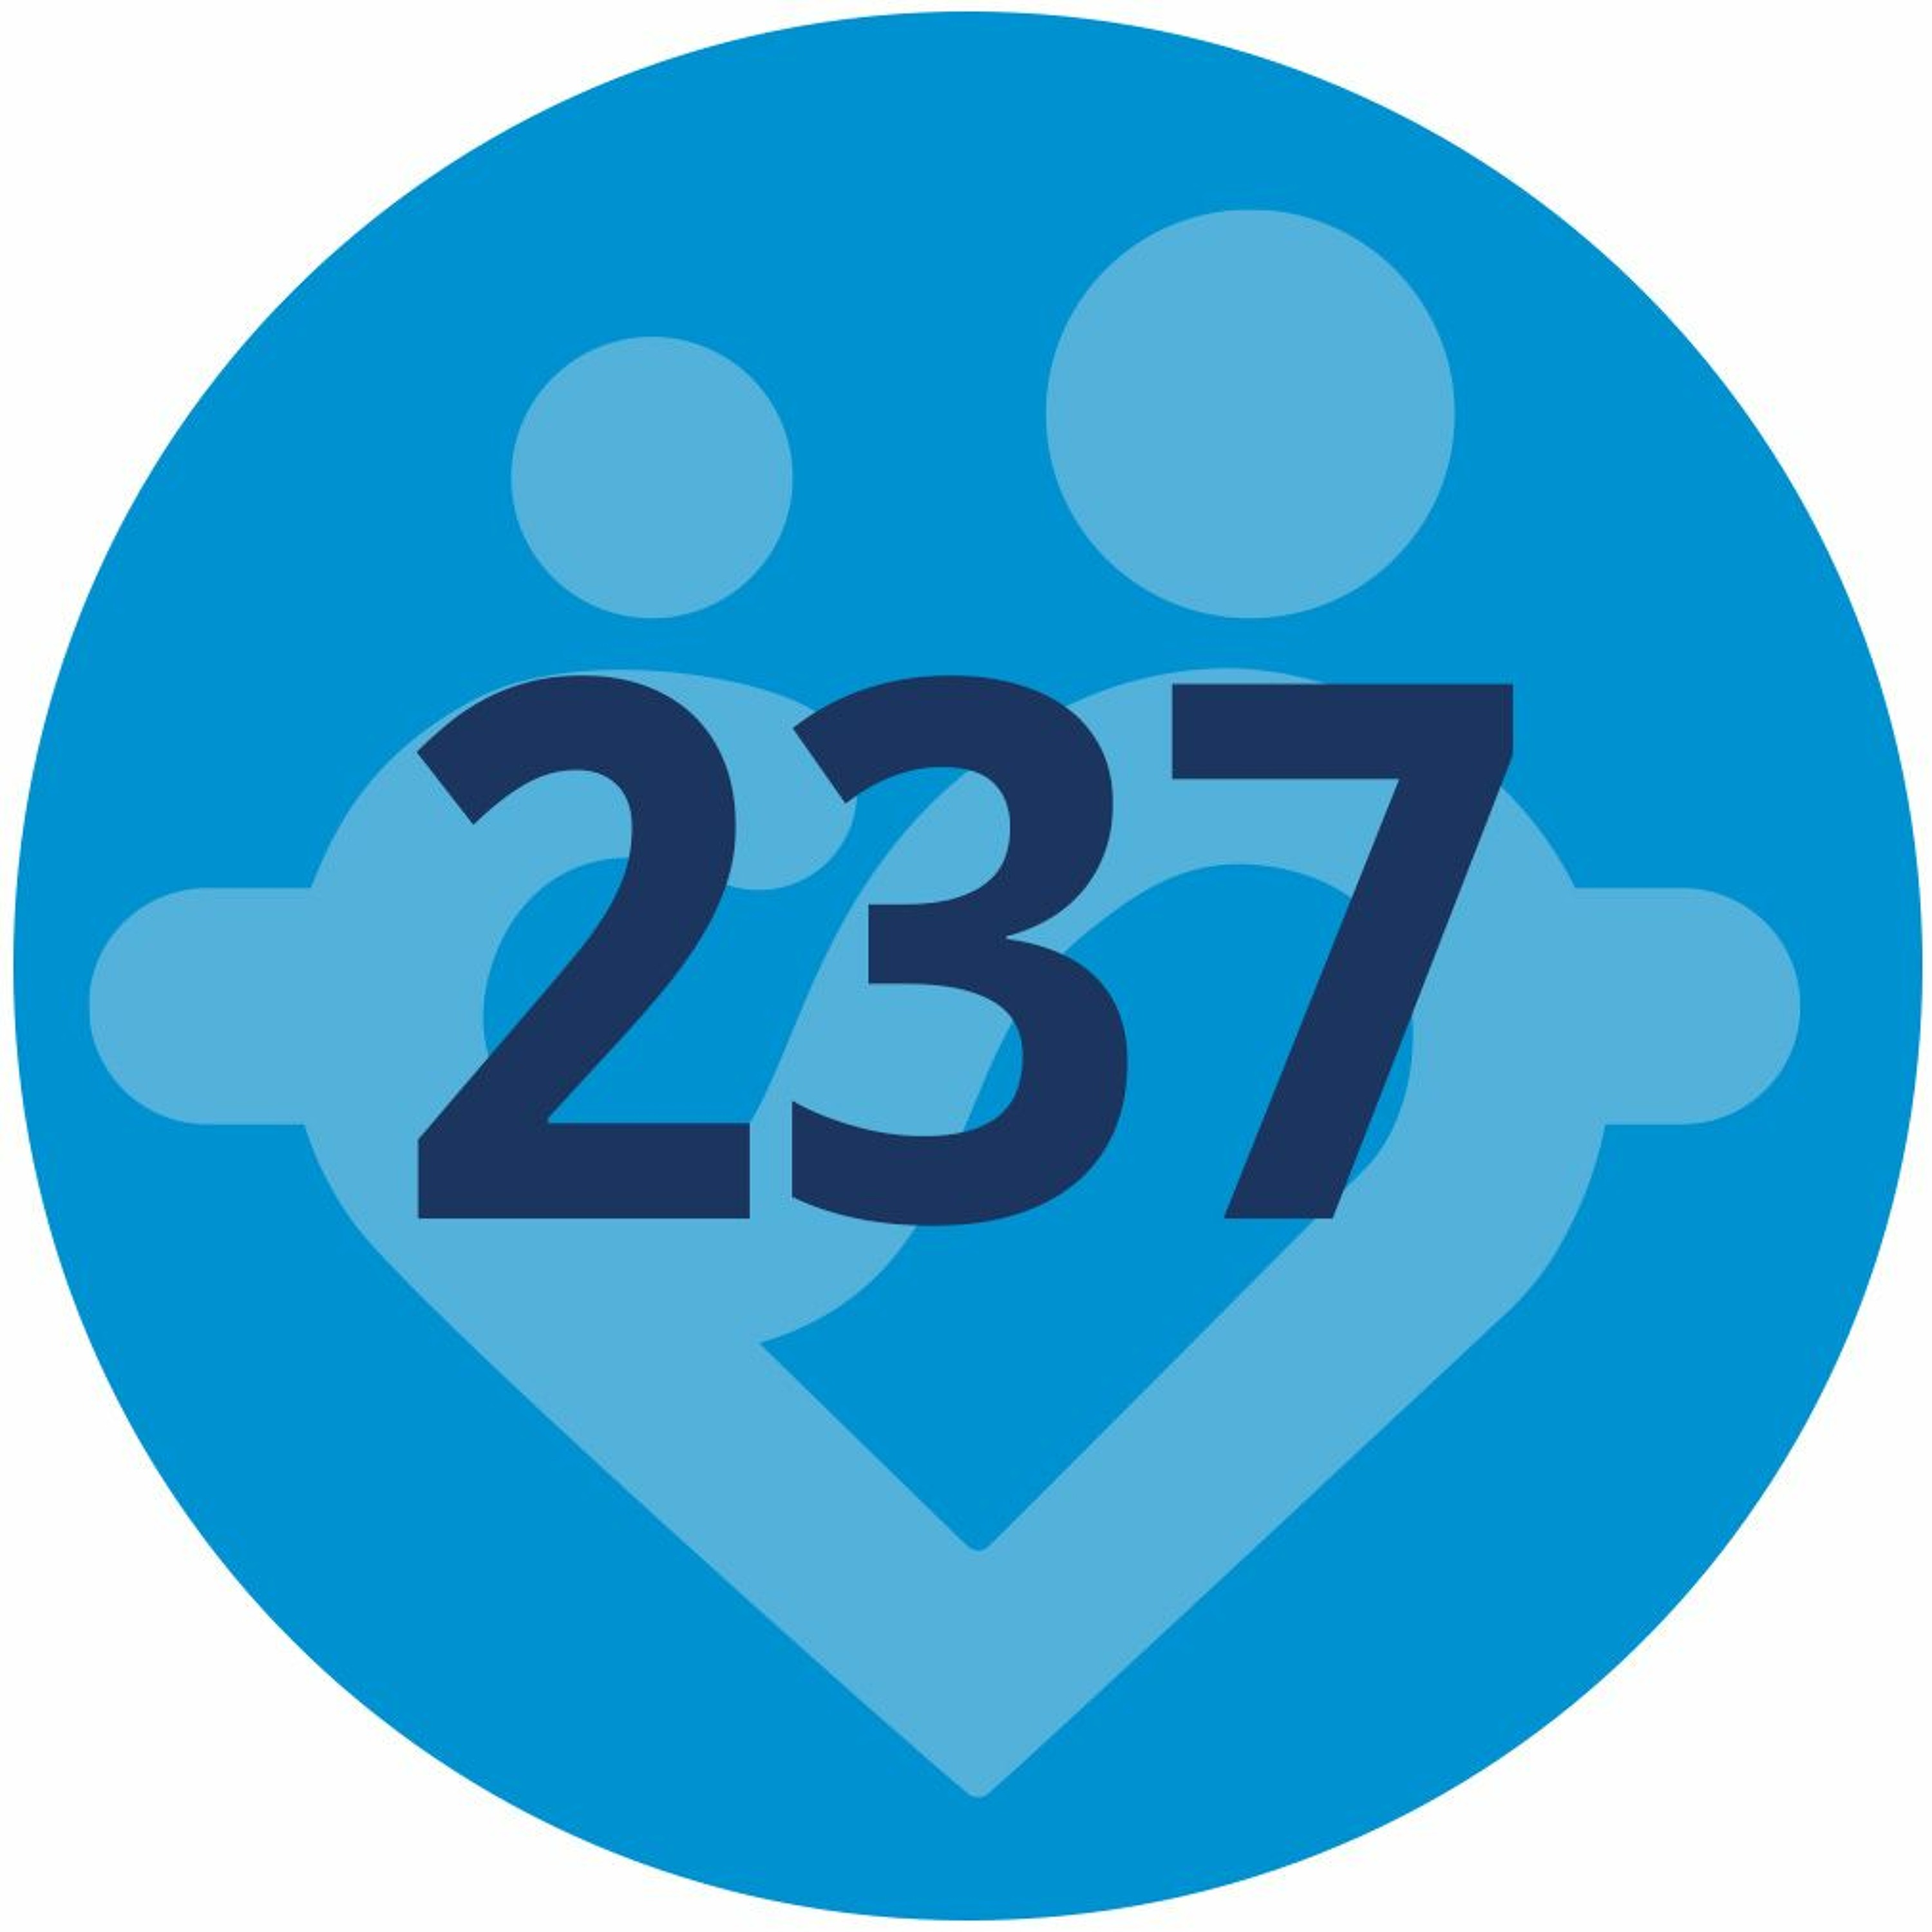 #237 - Ta en del av fjolårets avkastning och fira! | Uppföljning av börsåret 2021